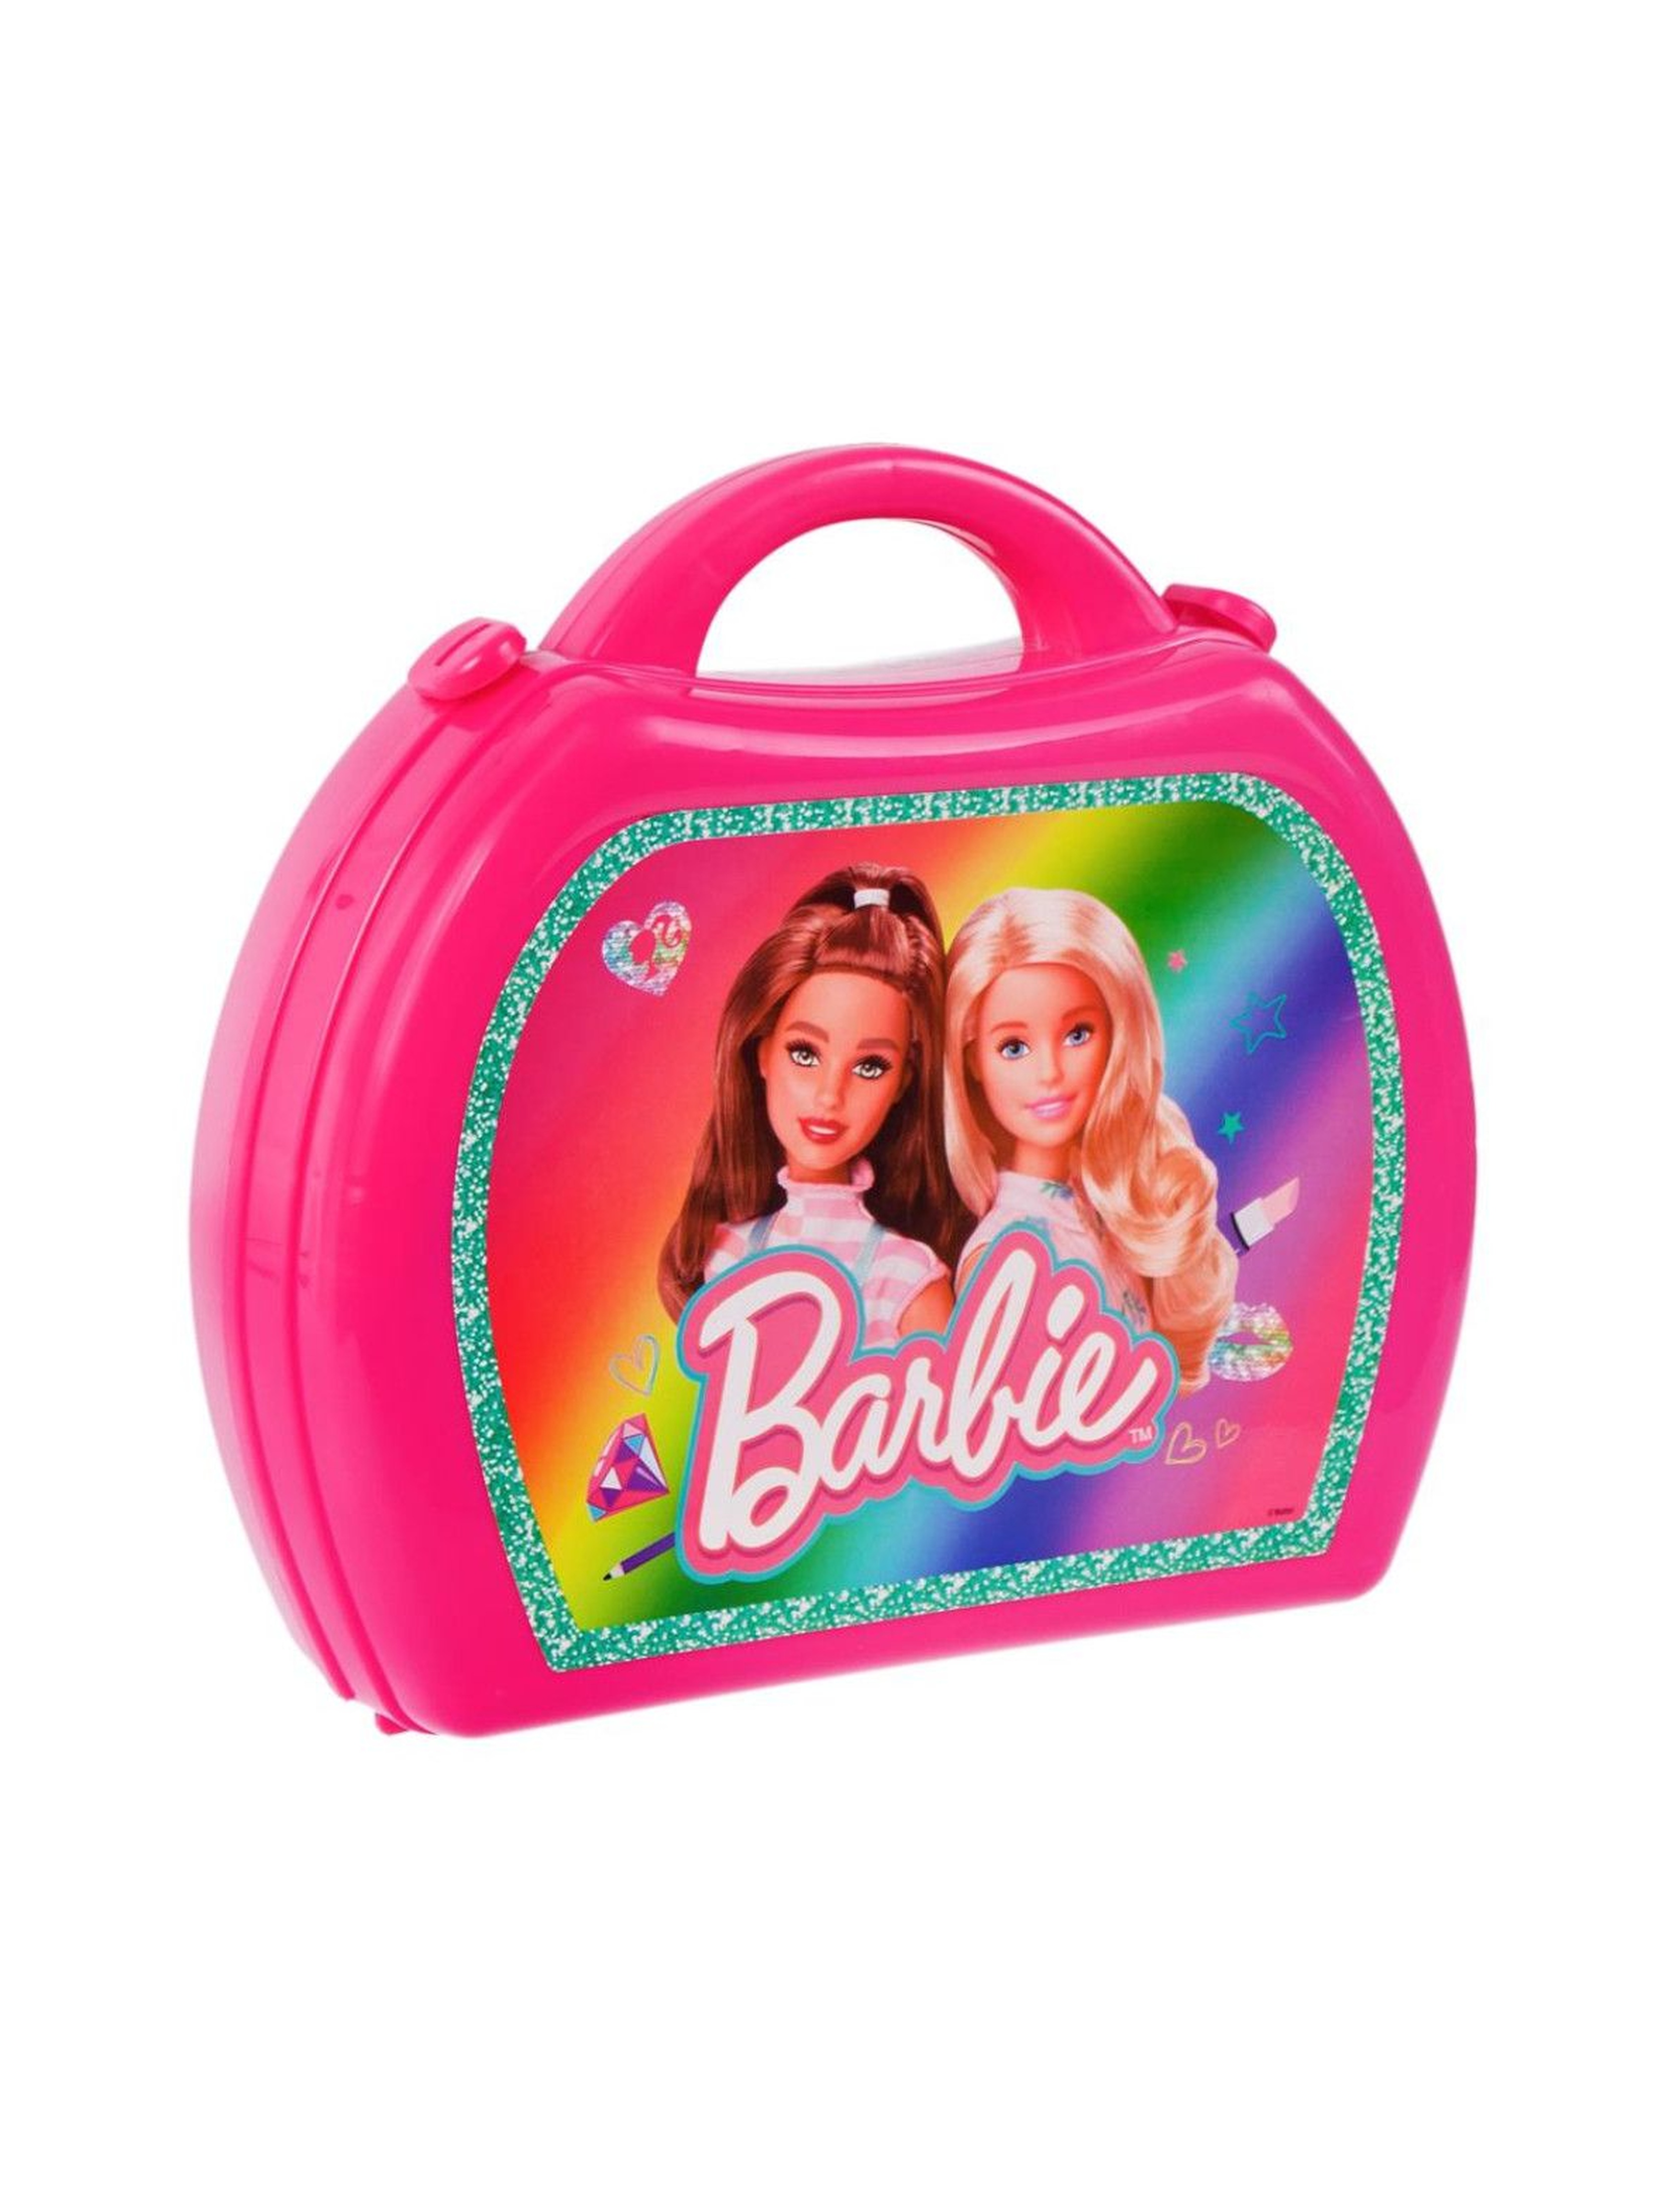 Barbie Fryzjer z walizką wiek 3+